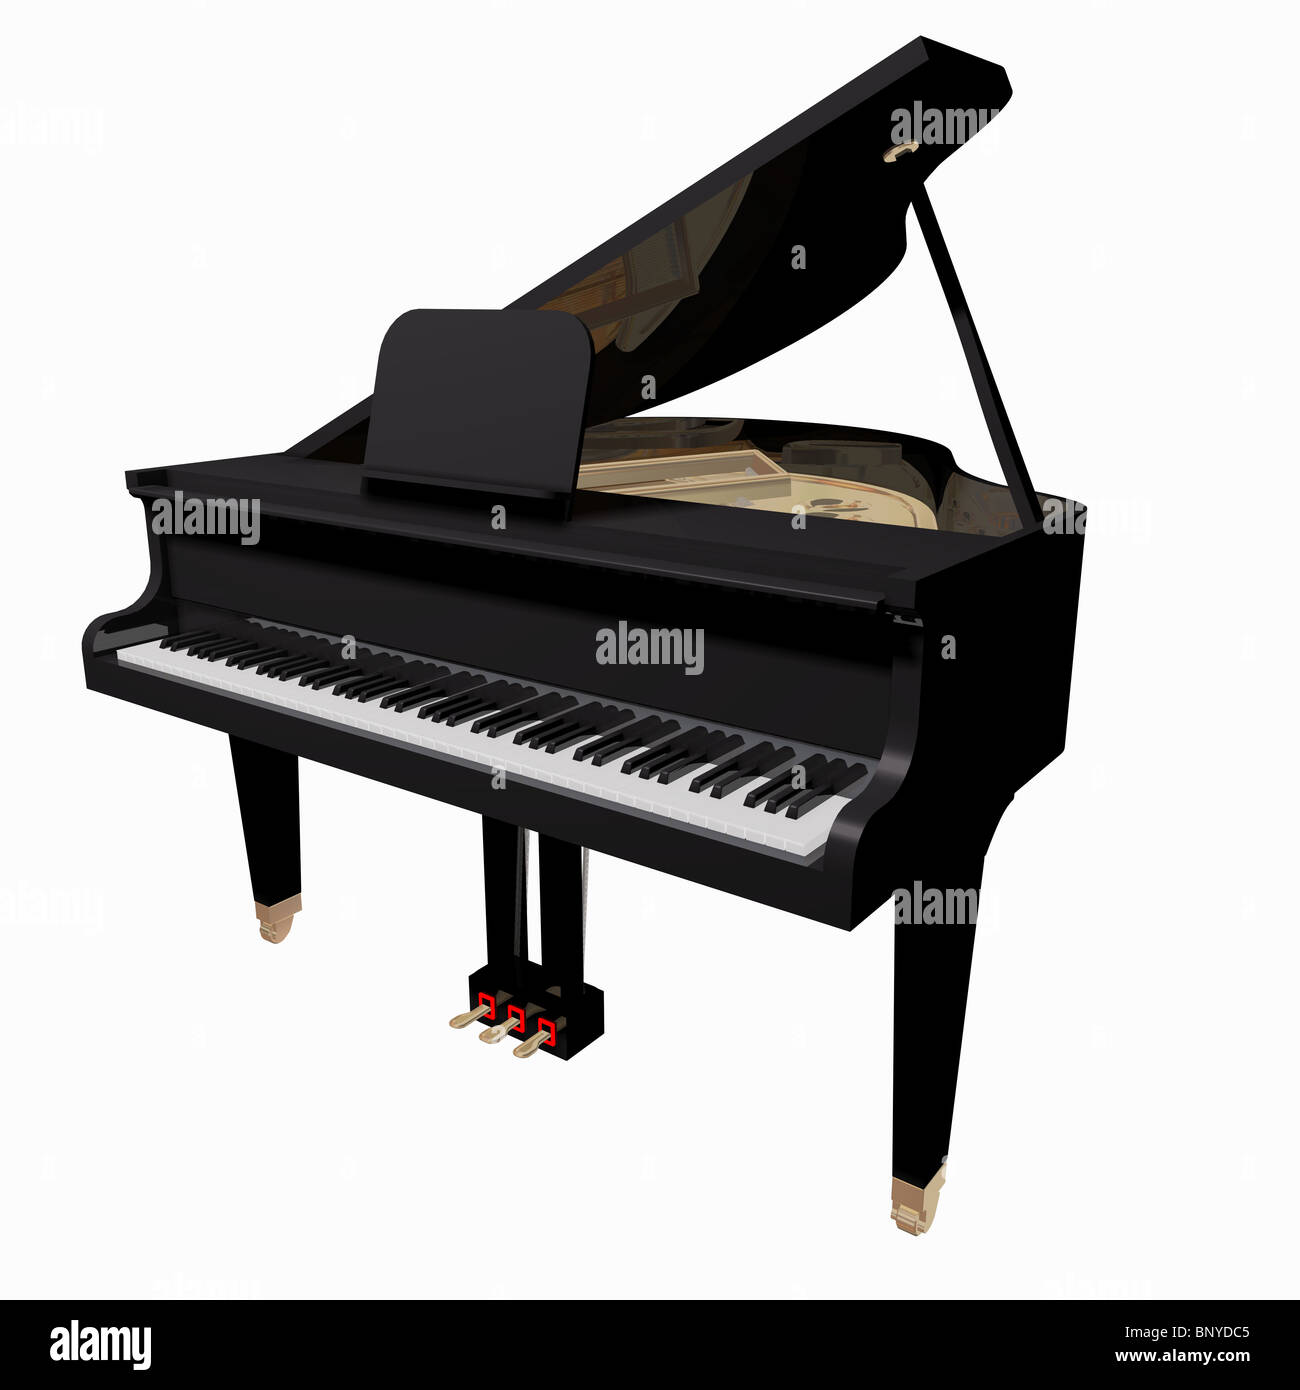 Đàn piano đứng một mình trên nền trắng sẽ mang đến cho bạn những cảm xúc về âm nhạc và sự tĩnh lặng đong đầy trong không gian trống trải